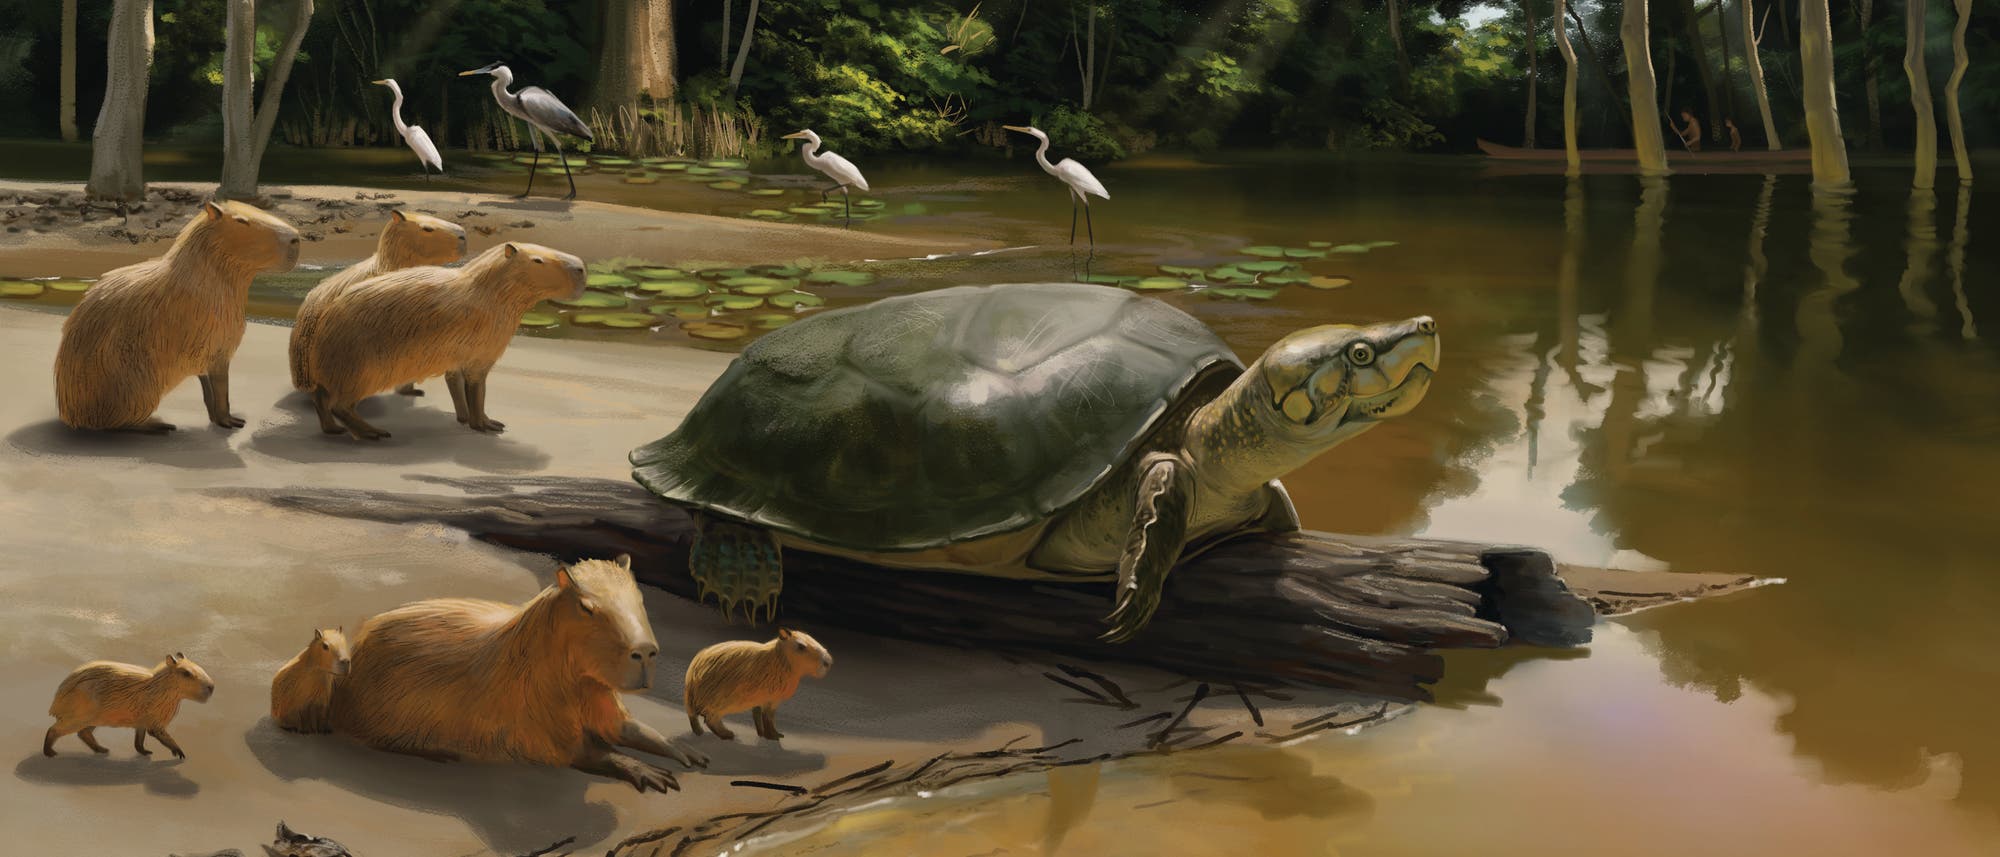 Illustration einer ausgestorbenen Riesenwasserschildkröte: Sie ist grün eingefärbt und befindet sich an einem Fluss im Regenwald, umgeben ist sie von Wasserschweinen, im Hintergrund stehen verschiedene Reiher und im Wald nähern sich zwei jagende Indigene